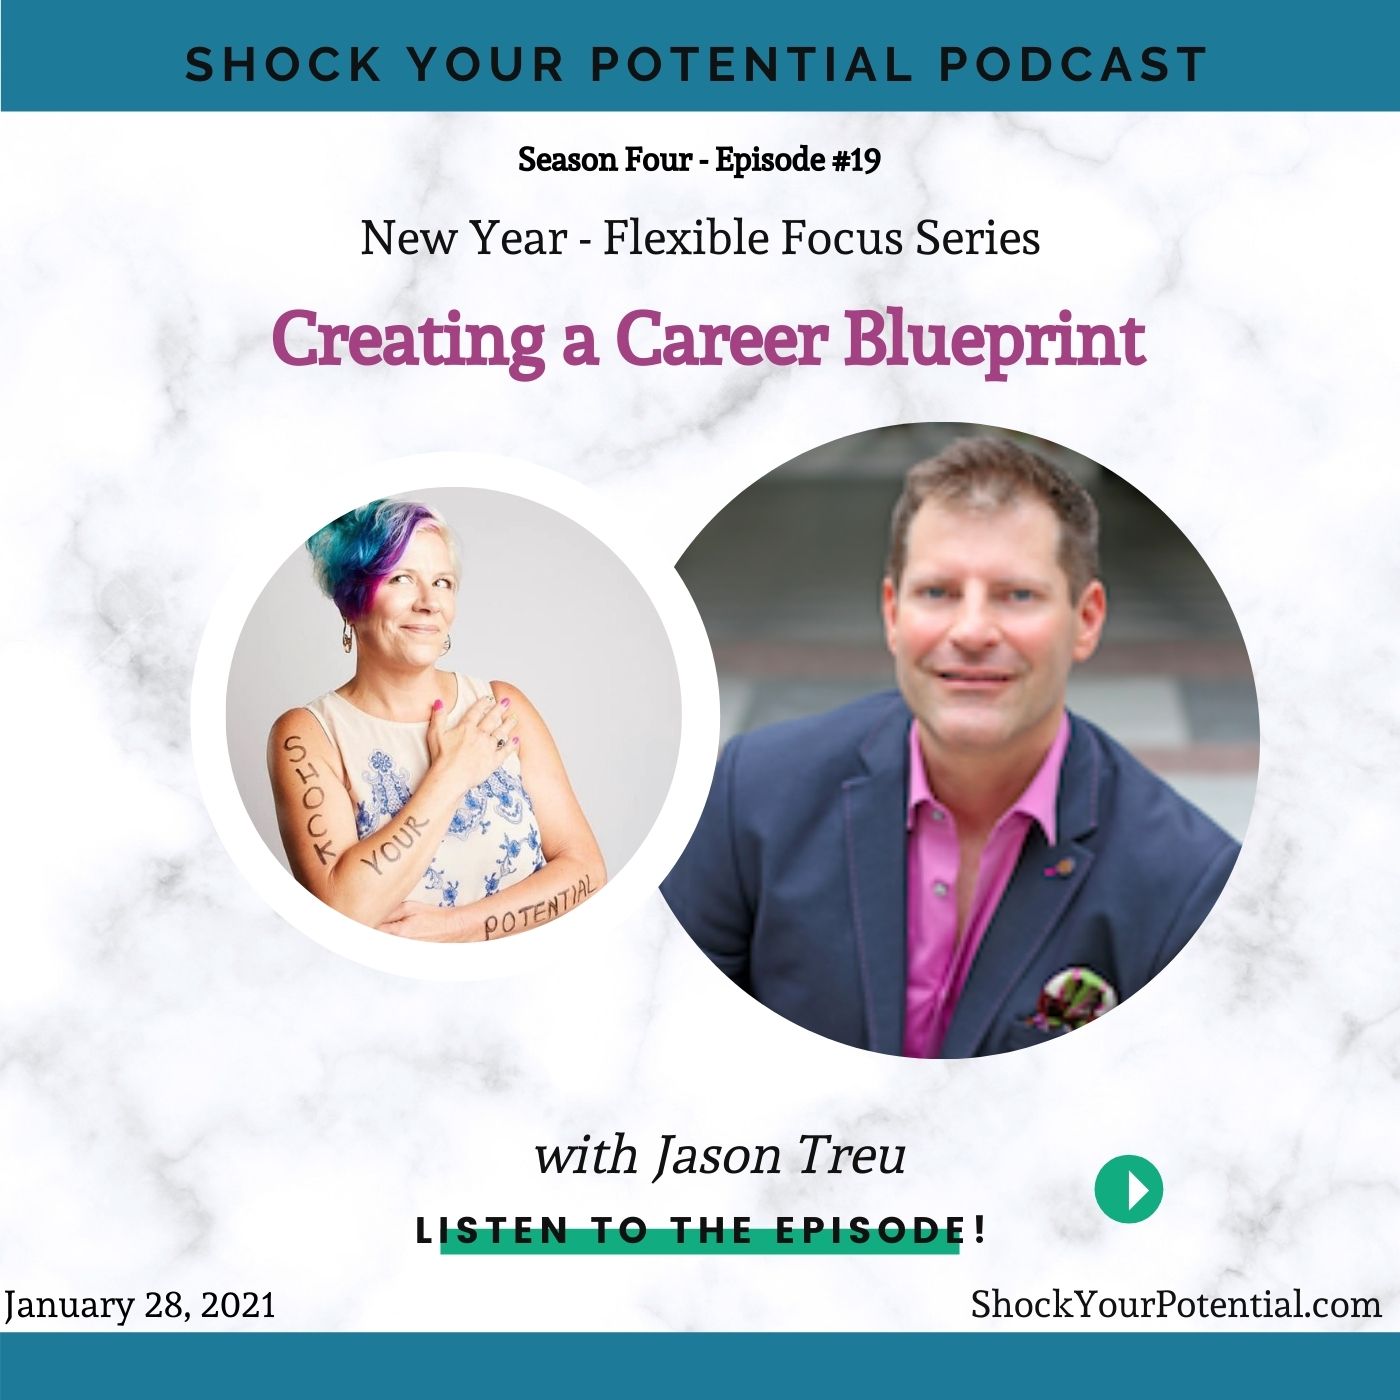 Creating a Career Blueprint – Jason Treu